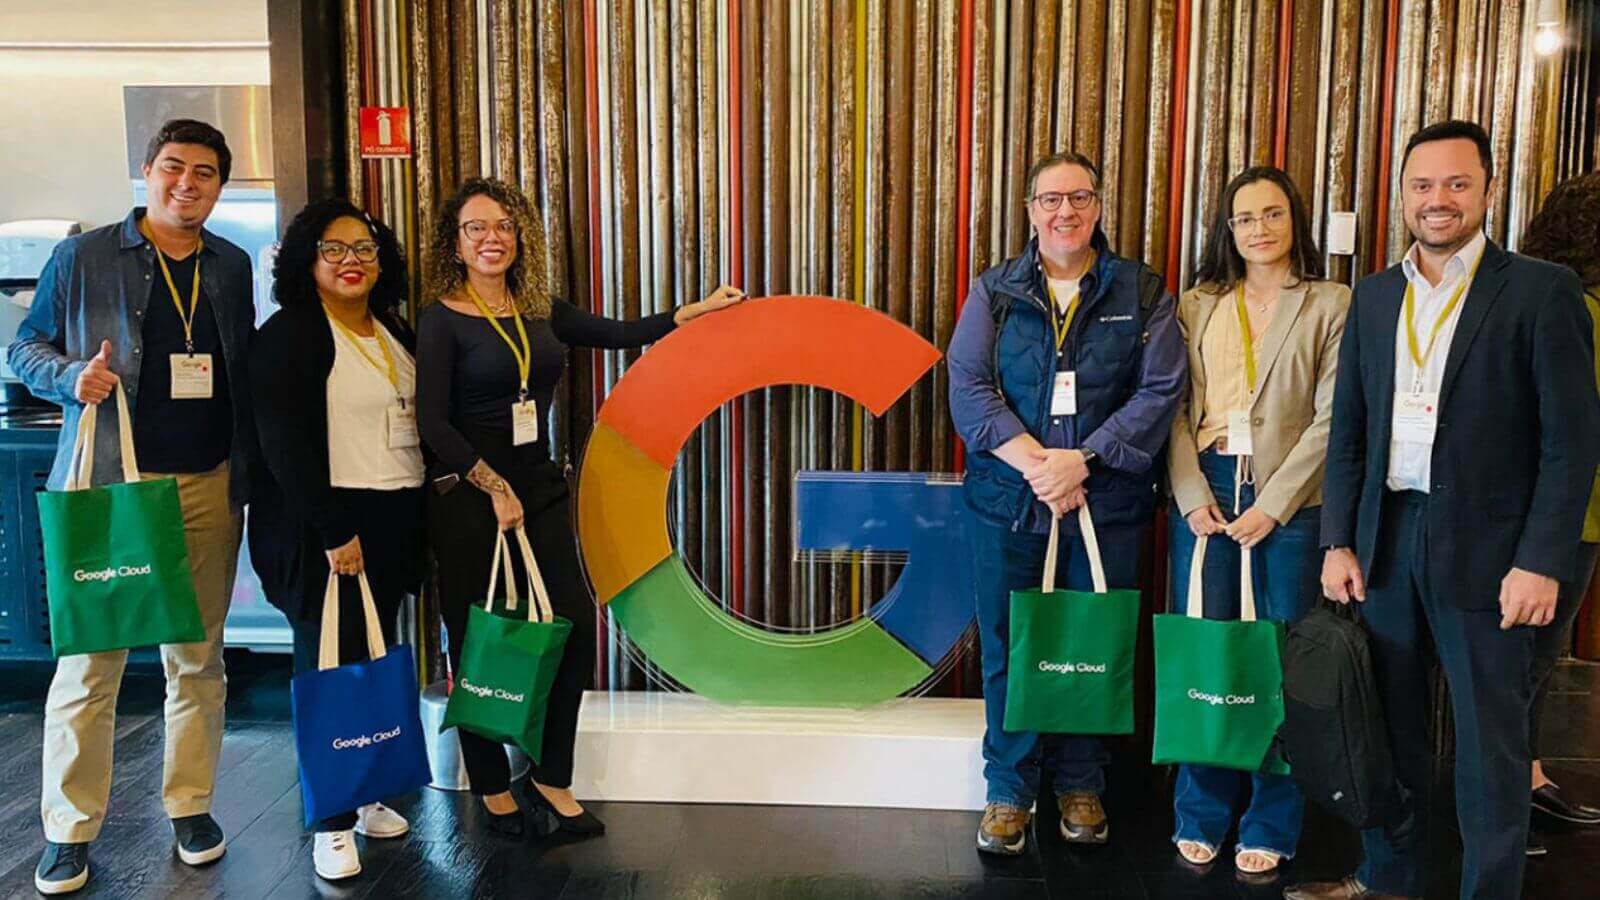 Equipe da Prefeitura de Jundiaí participa de evento no Google